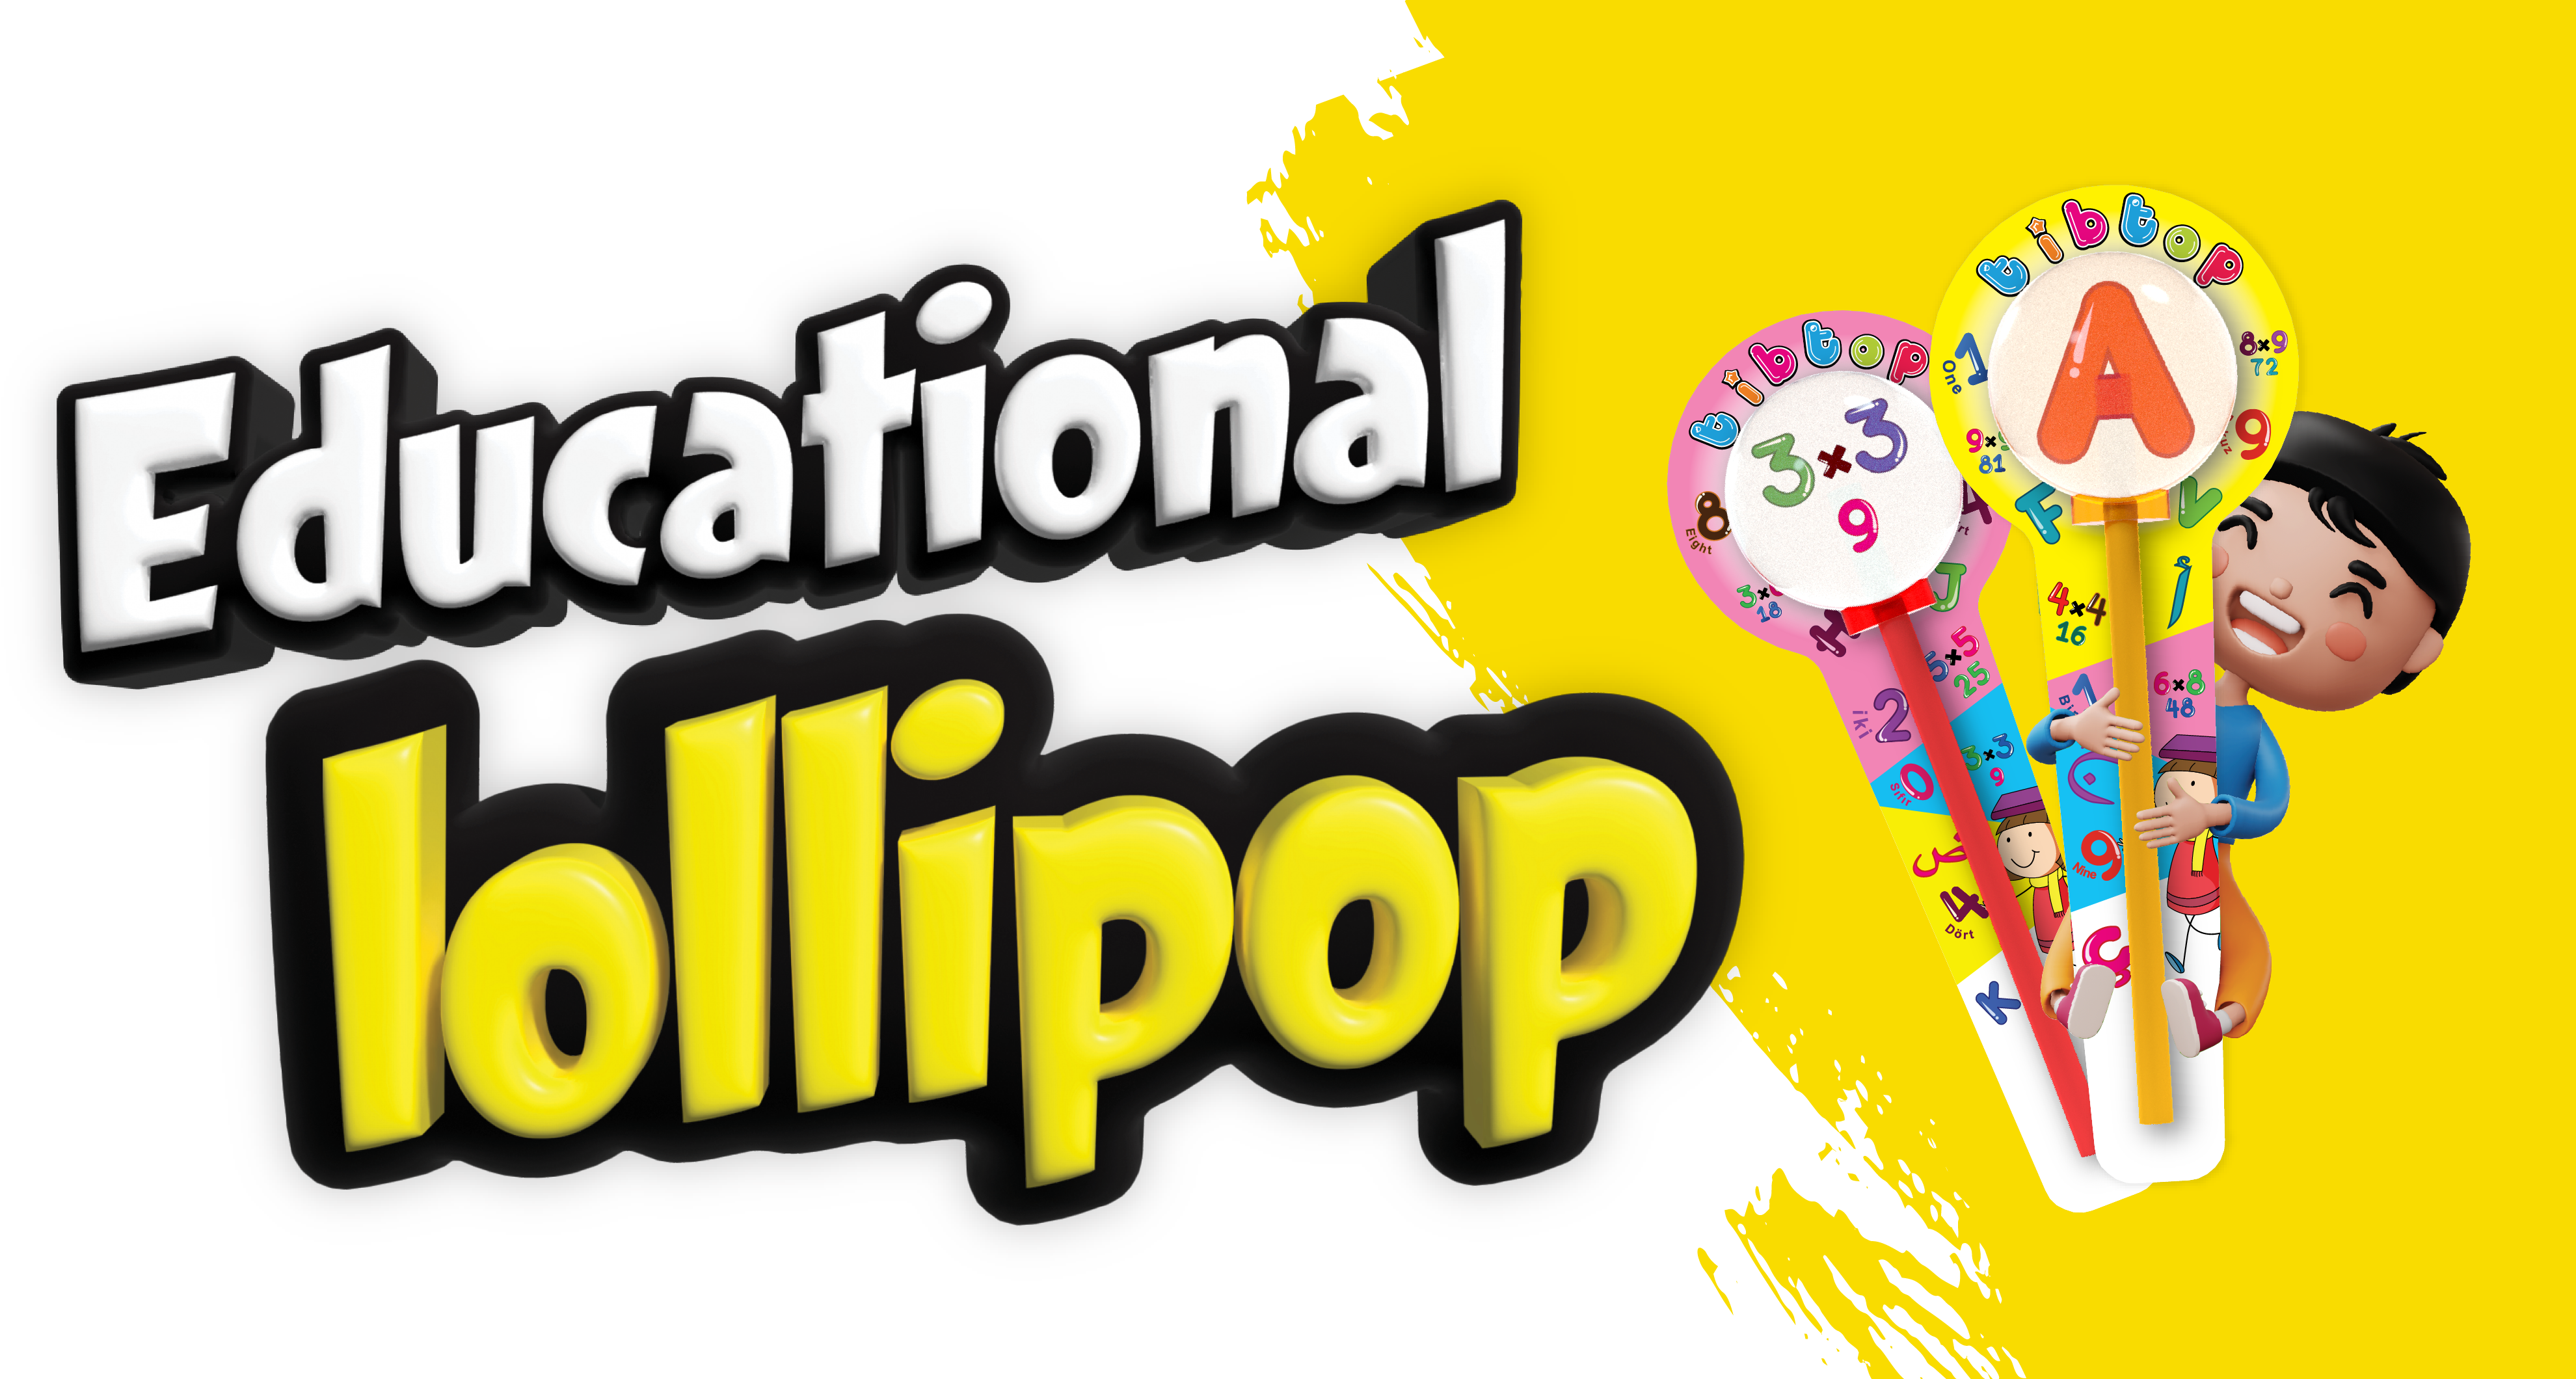 Educational lollipop